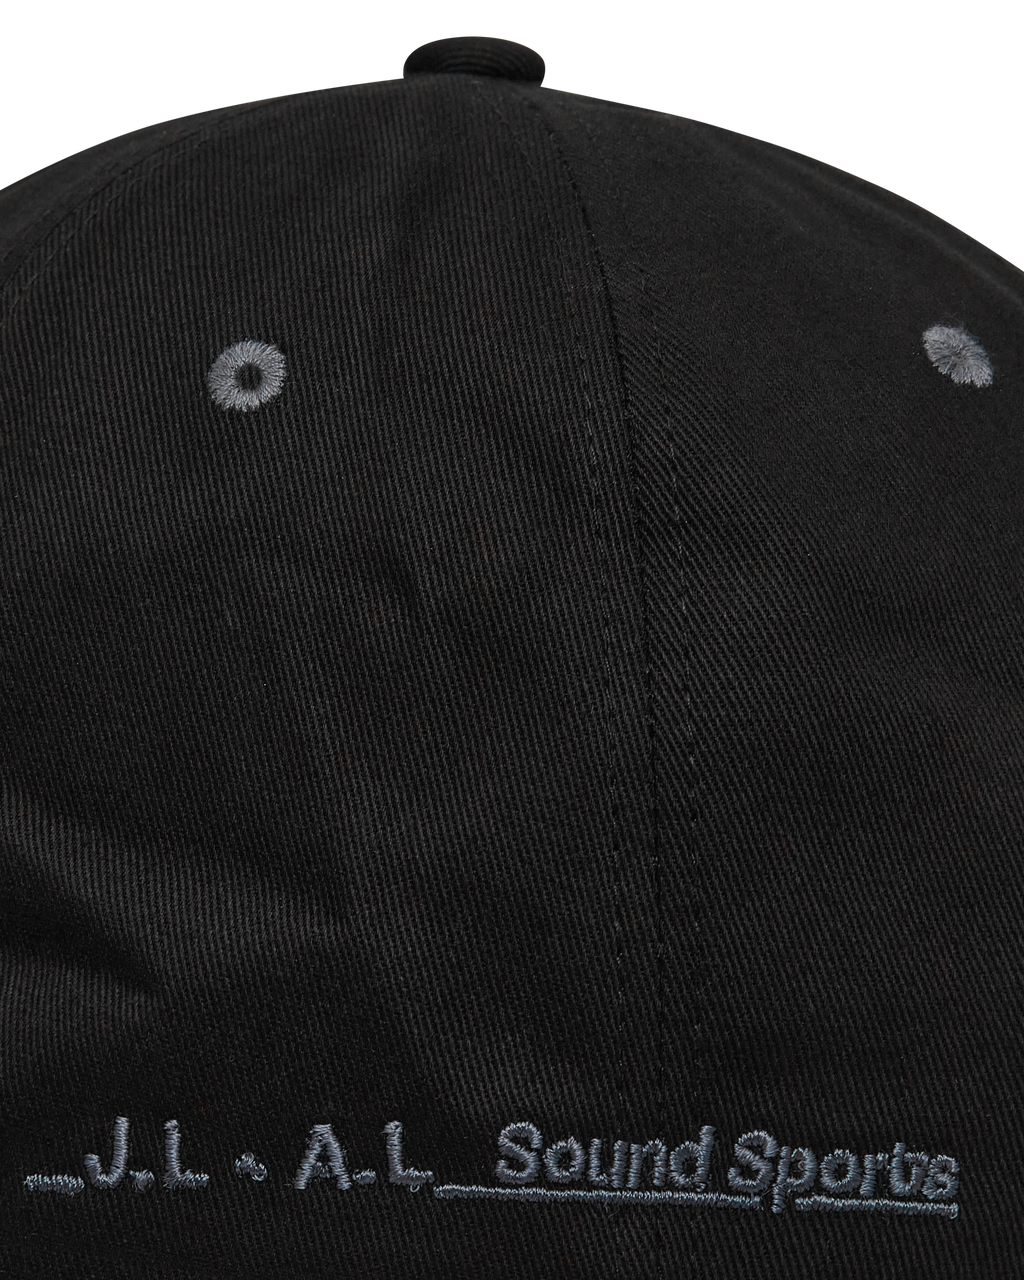 _J.L - A.L_ _J.L-A.L_ x Sound Sports Logo Cap J297452-ONE SIZE-Black 9